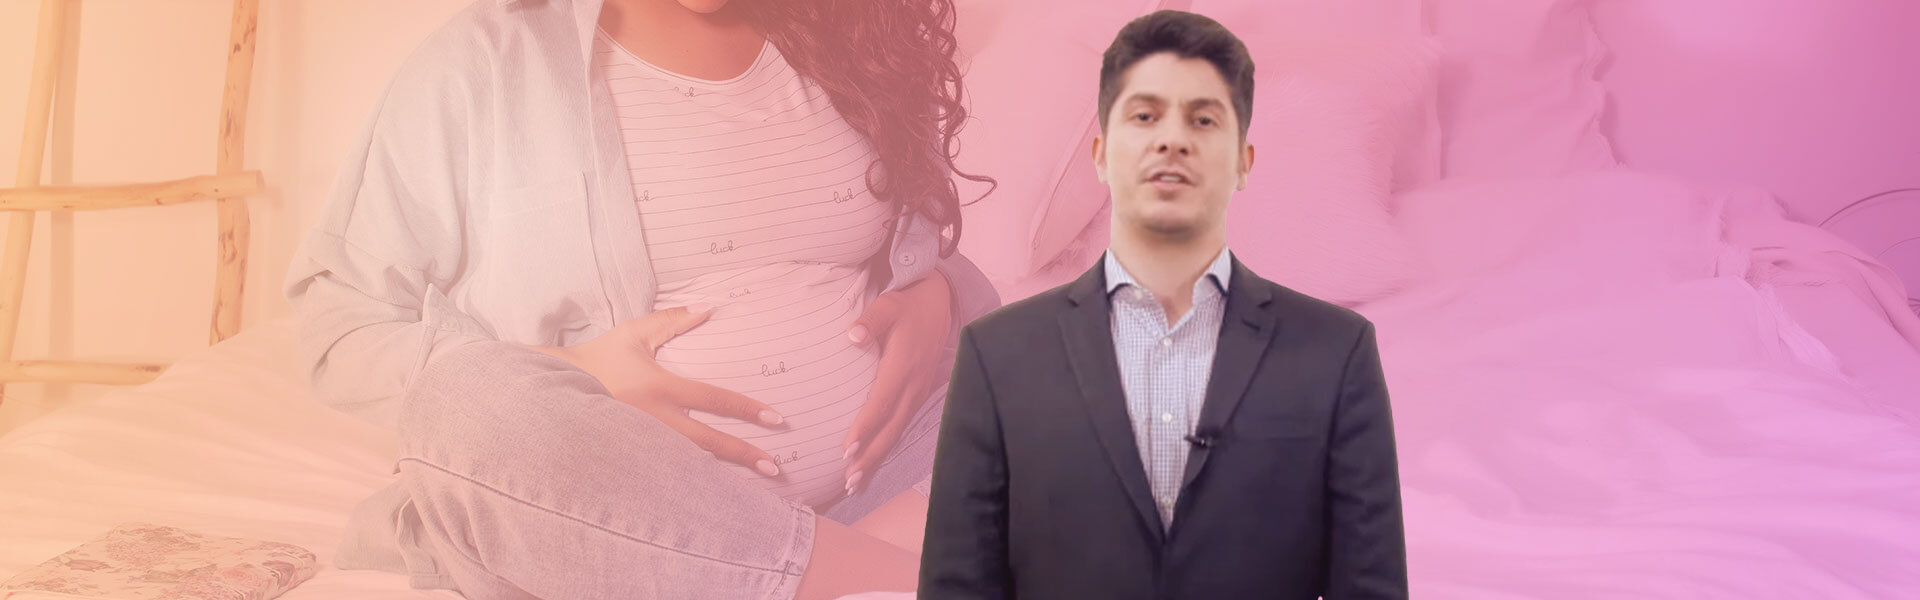 Os tratamentos para engravidar aumentam o risco de câncer de mama?